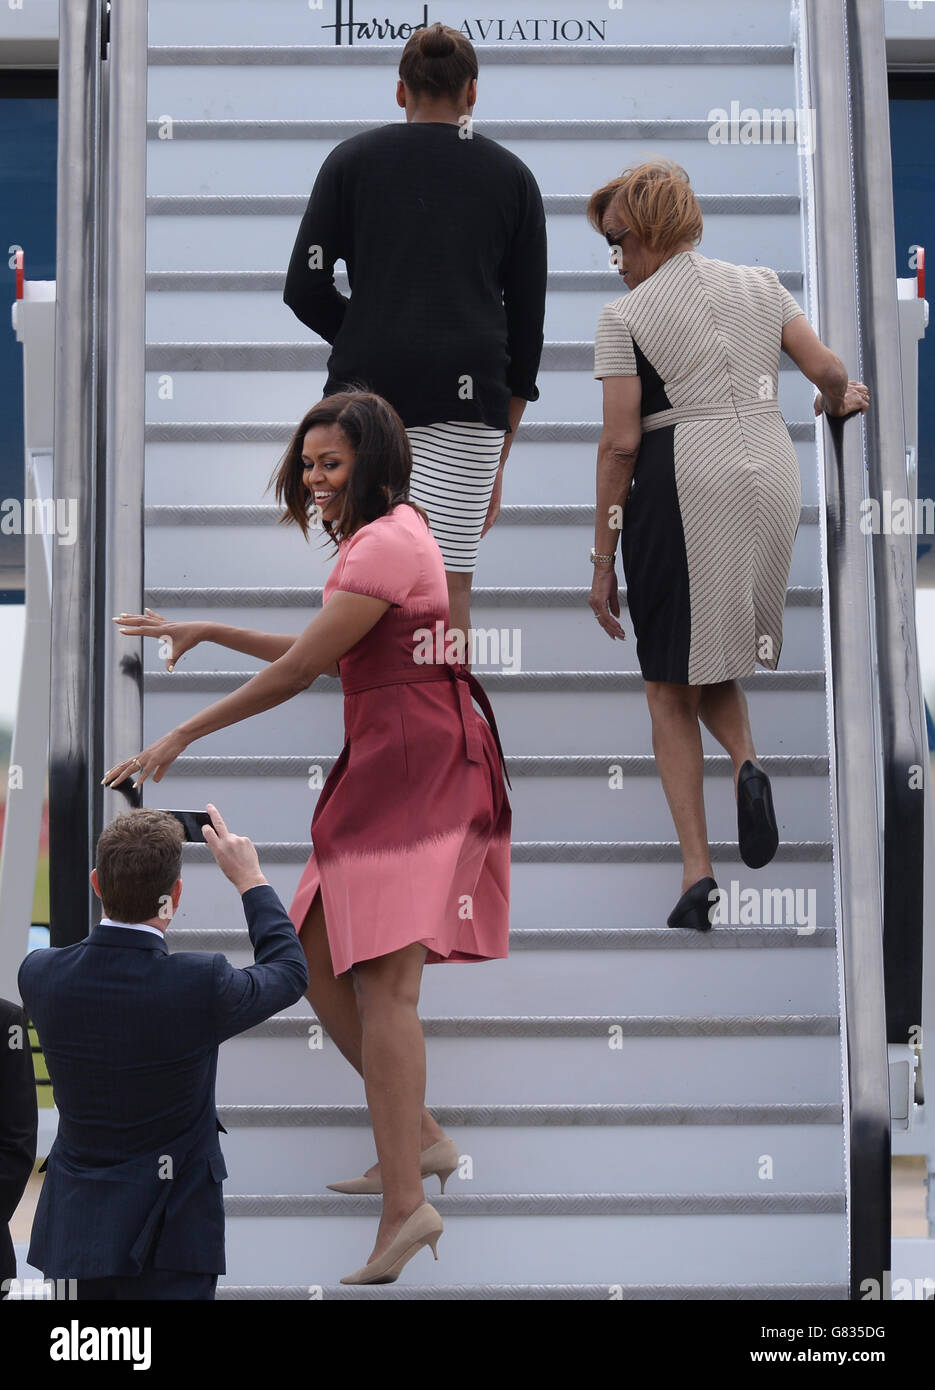 US-Botschafter in London Matthew Barzun fotografiert US-First Lady Michelle Obama, als sie nach einem dreitägigen Besuch im Land vom Stansted Airport in Essex abreist. Stockfoto